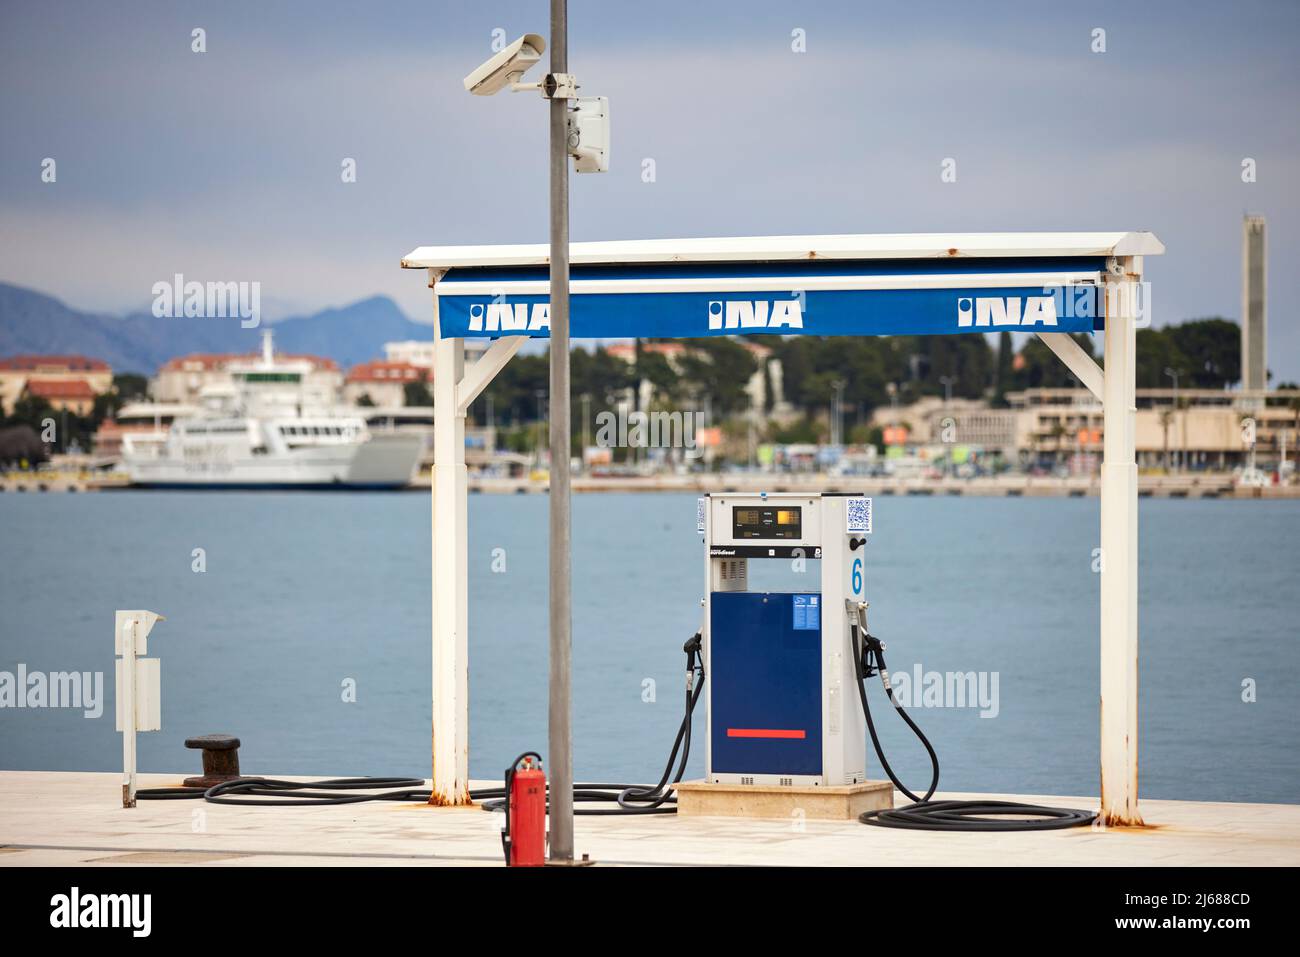 La città di Spalato in Croazia nella regione della Dalmazia, il porto di mare INA Boat Refueling Foto Stock